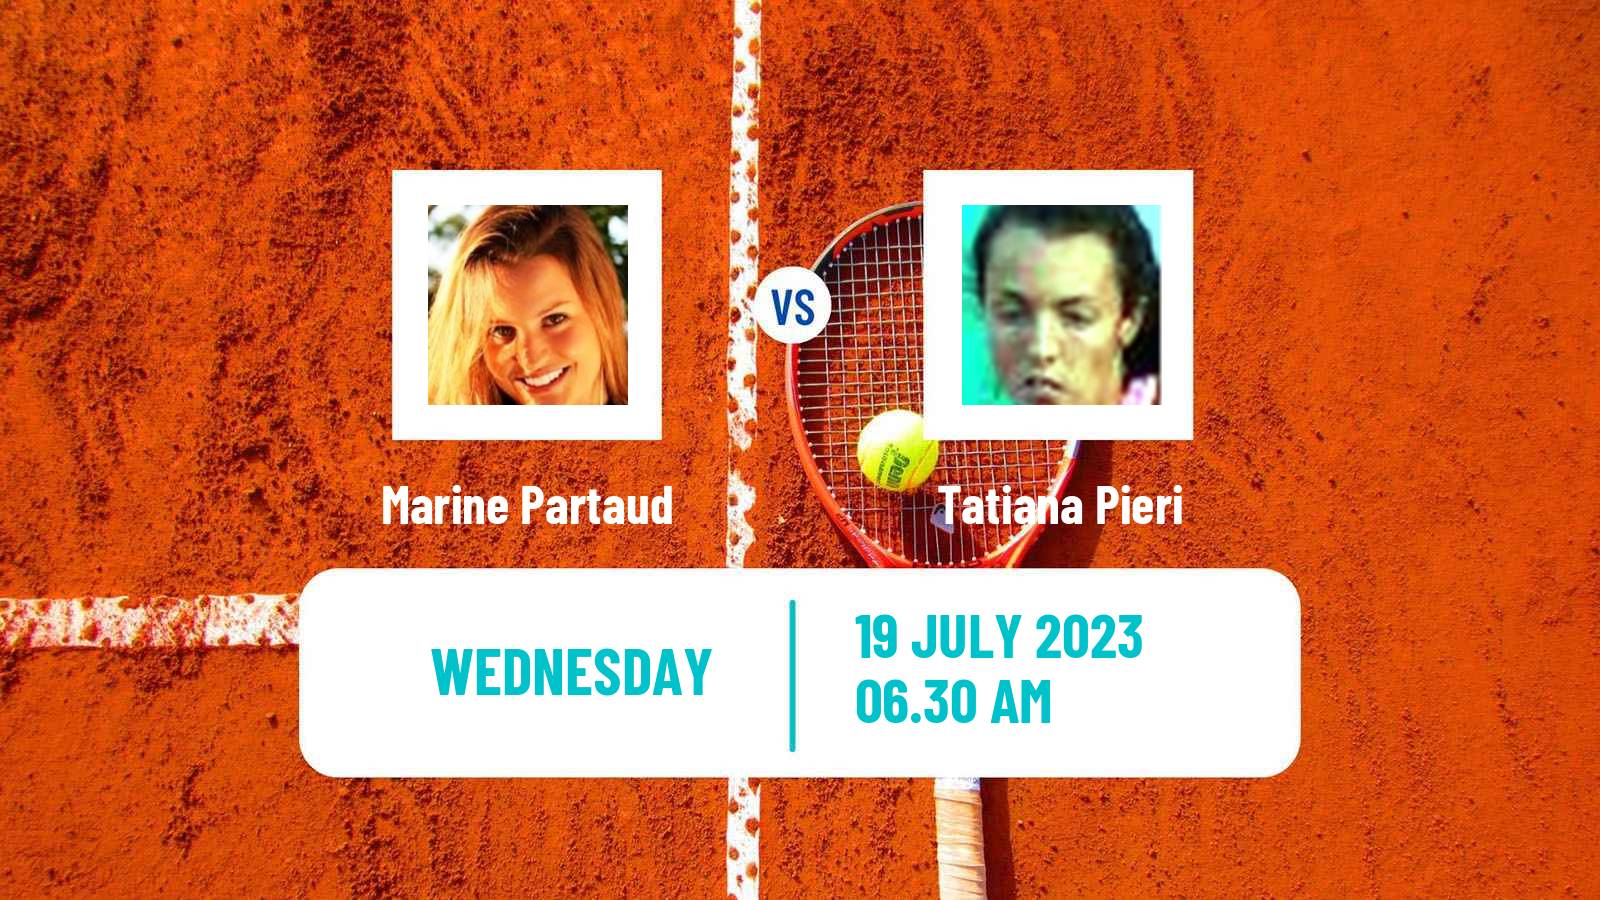 Tennis ITF W25 Darmstadt Women Marine Partaud - Tatiana Pieri